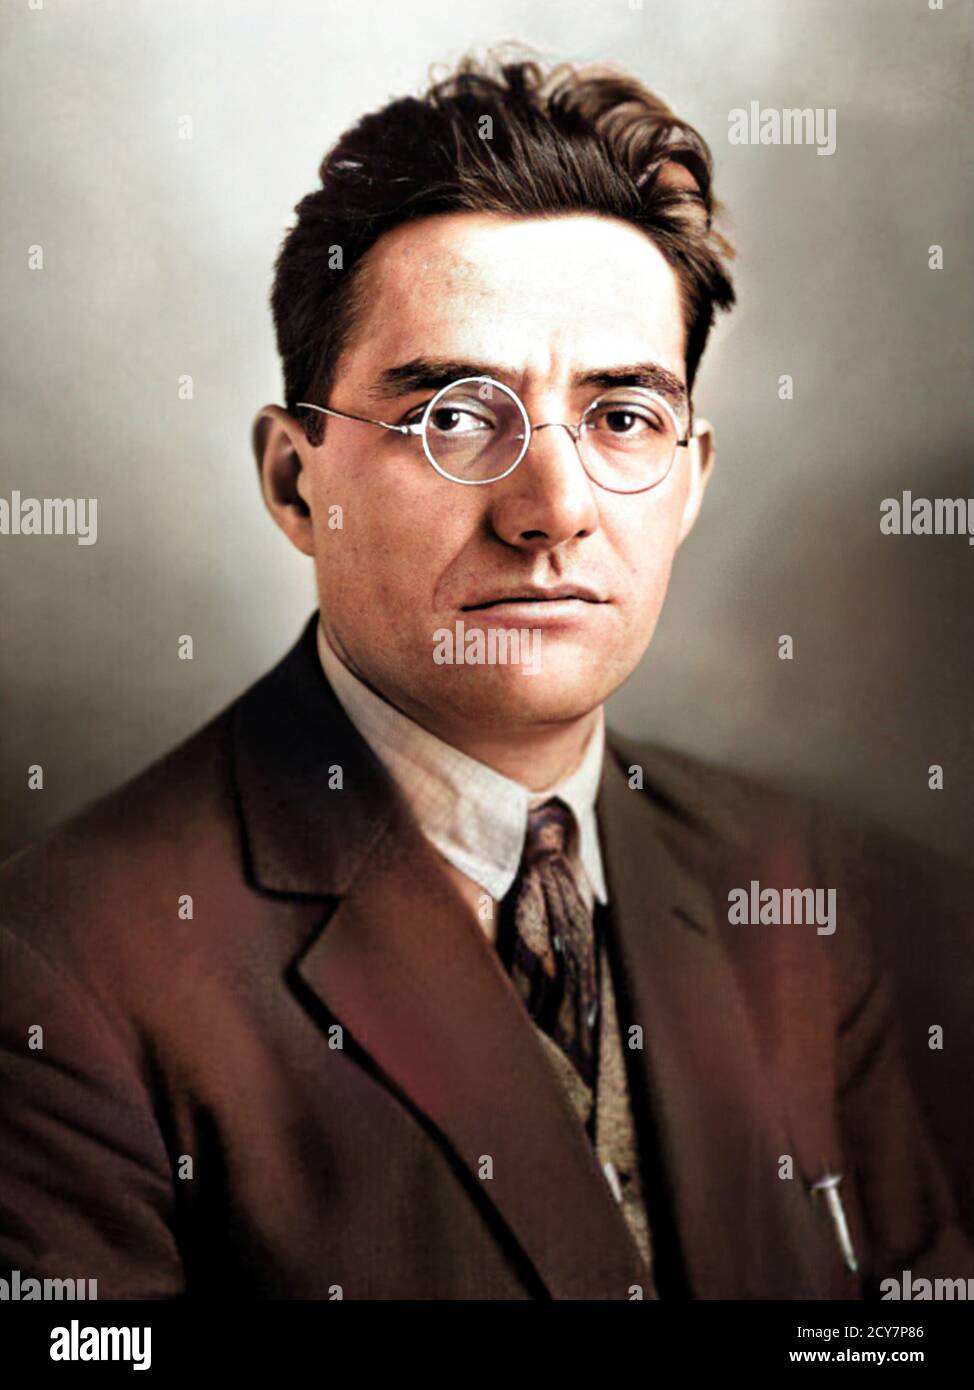 1927 c., Parigi, FRANCIA: IL politico fascista francese JACQUES DORIOT ( 1898 - 1945 ). Fotografo sconosciuto . DIGITALMENTE COLORATO .- POLITICO - POLITICA - POLITICA - FASCISTA - FASCISMO FRANCESE - FASCISMO - FRANCIA - foto storiche - STORIA - ritratto - ritratto - lente - occhiali da vista - GIORNALISMO - GIORNALISTA - GIORNALISMO - GIORNALISTA - TIE - cravatta --- ARCHIVIO GBB Foto Stock